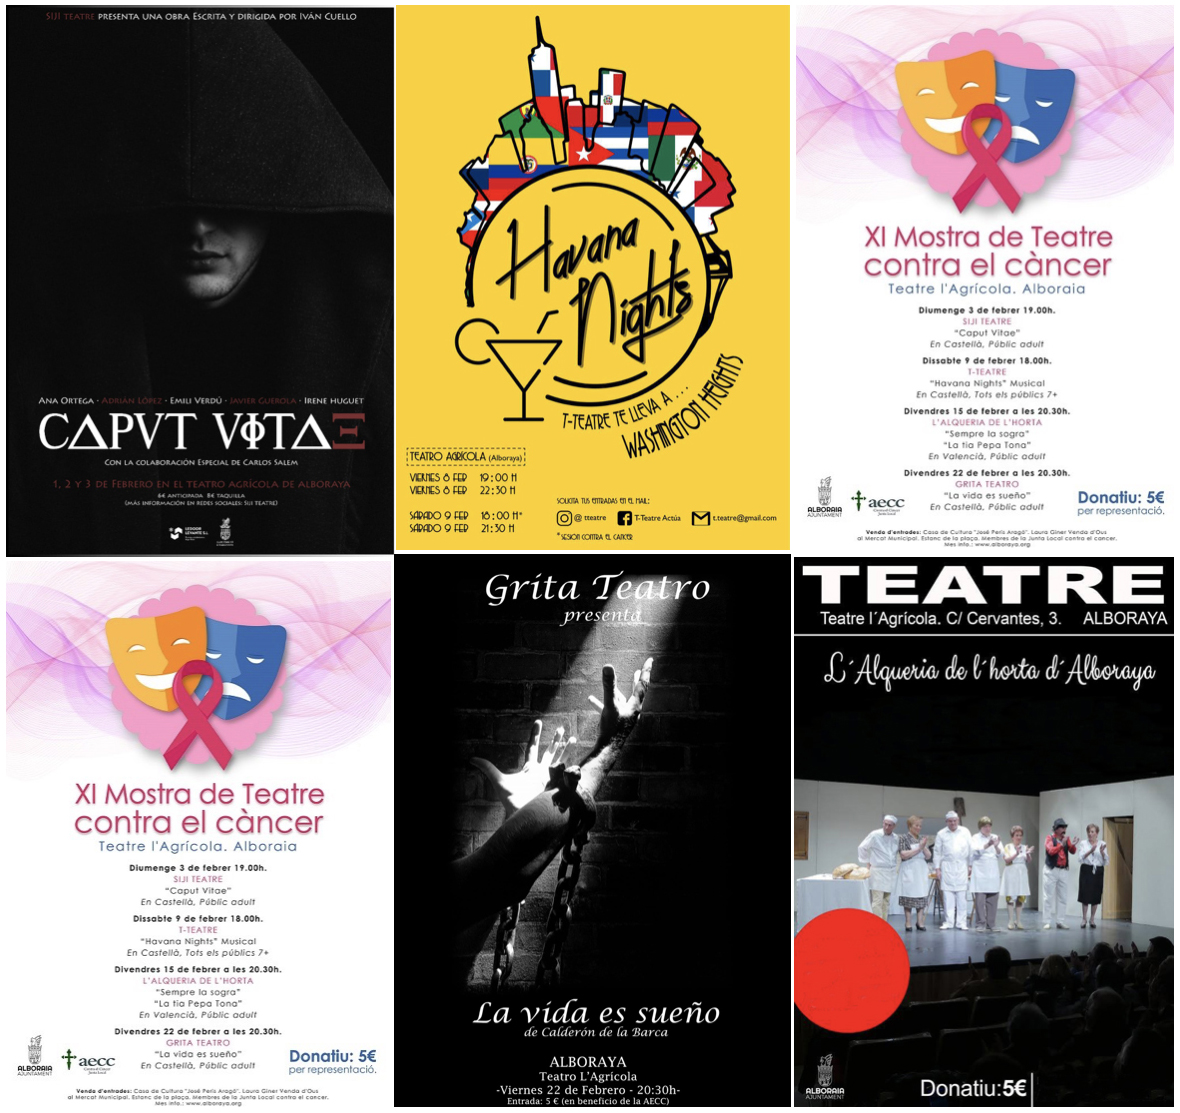 XI Mostra de Teatre contra el Càncer de Alboraia